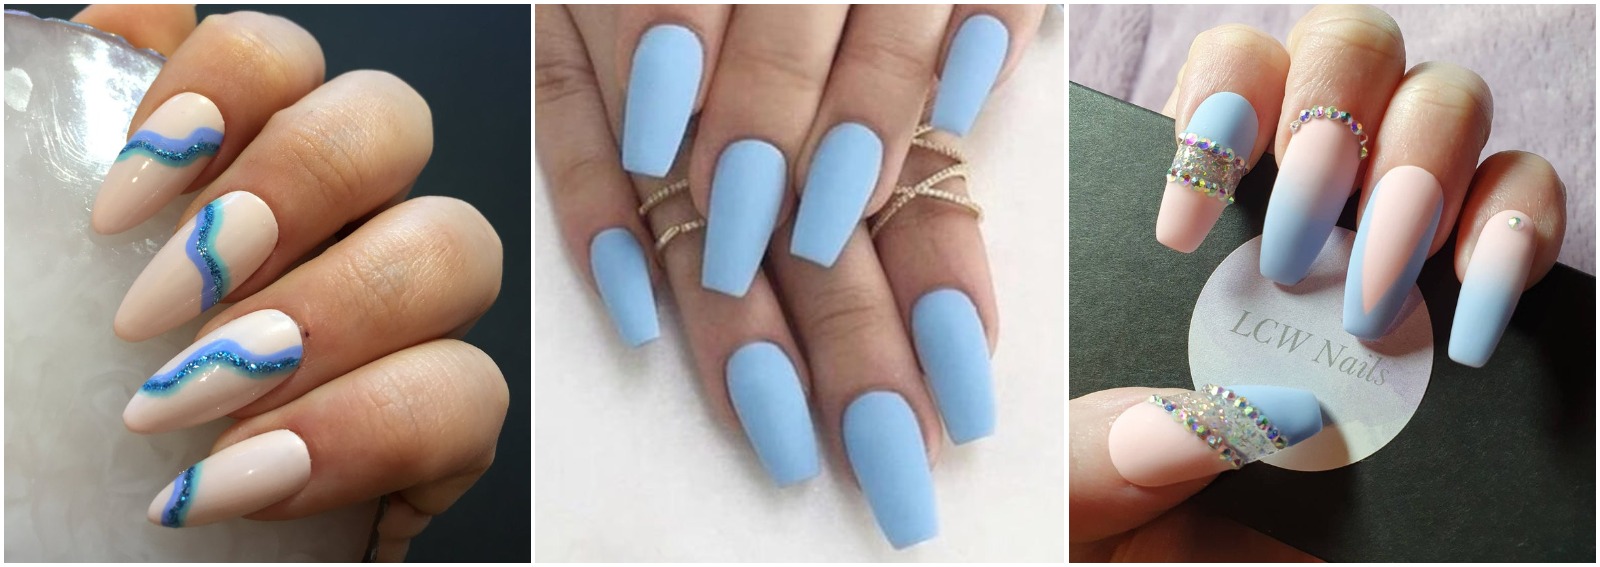 Unghie indaco nail art azzurro polvere primavera estate 2021 cover desktop